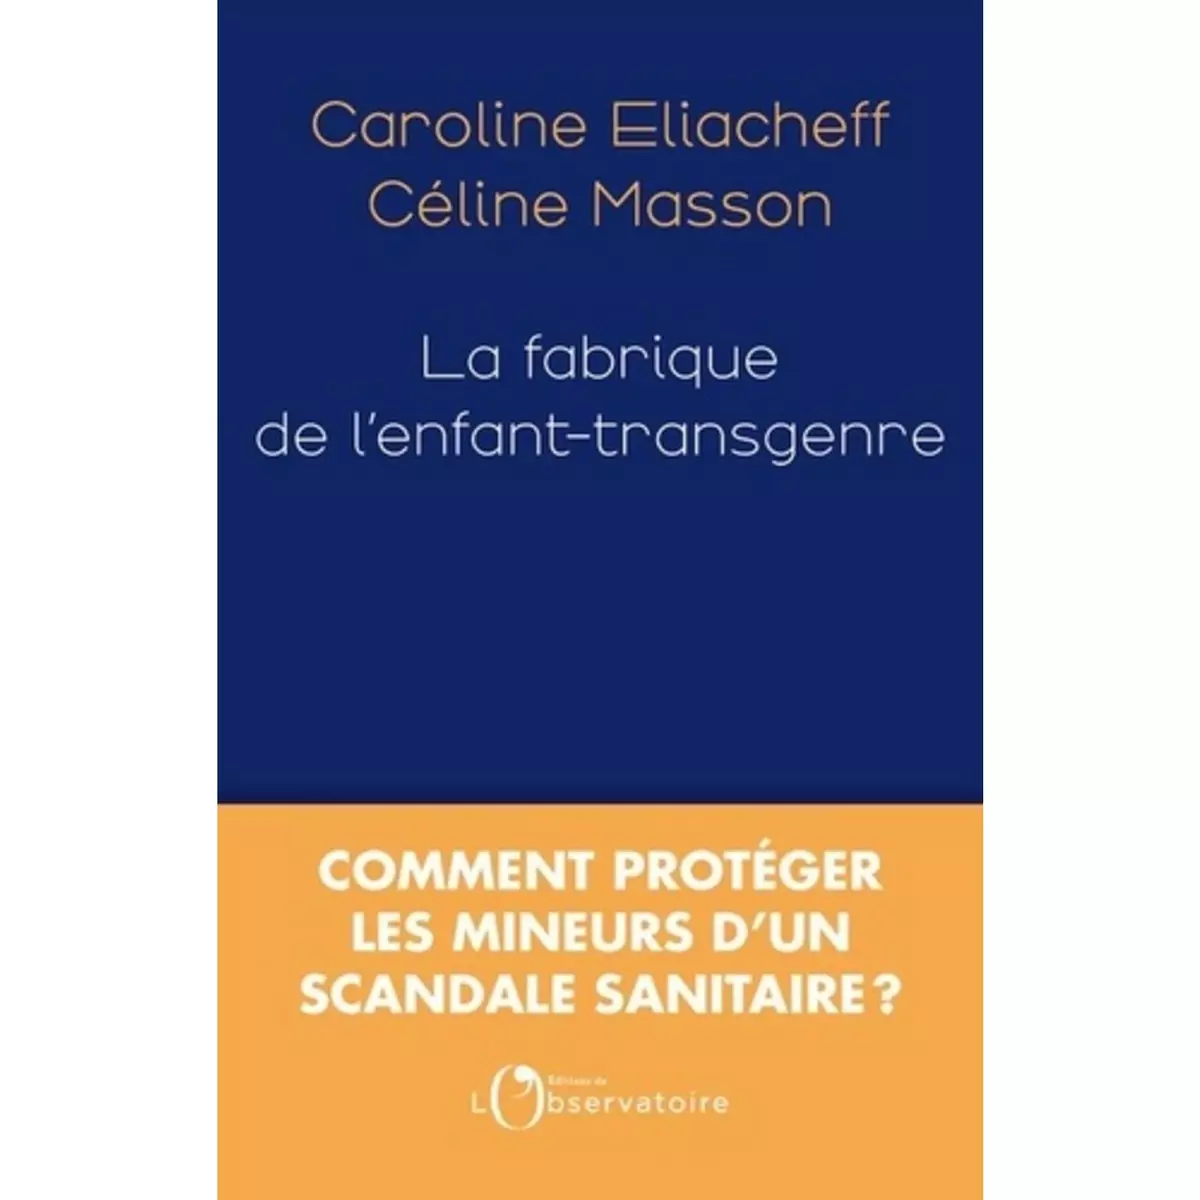  LA FABRIQUE DE L'ENFANT-TRANSGENRE, Eliacheff Caroline